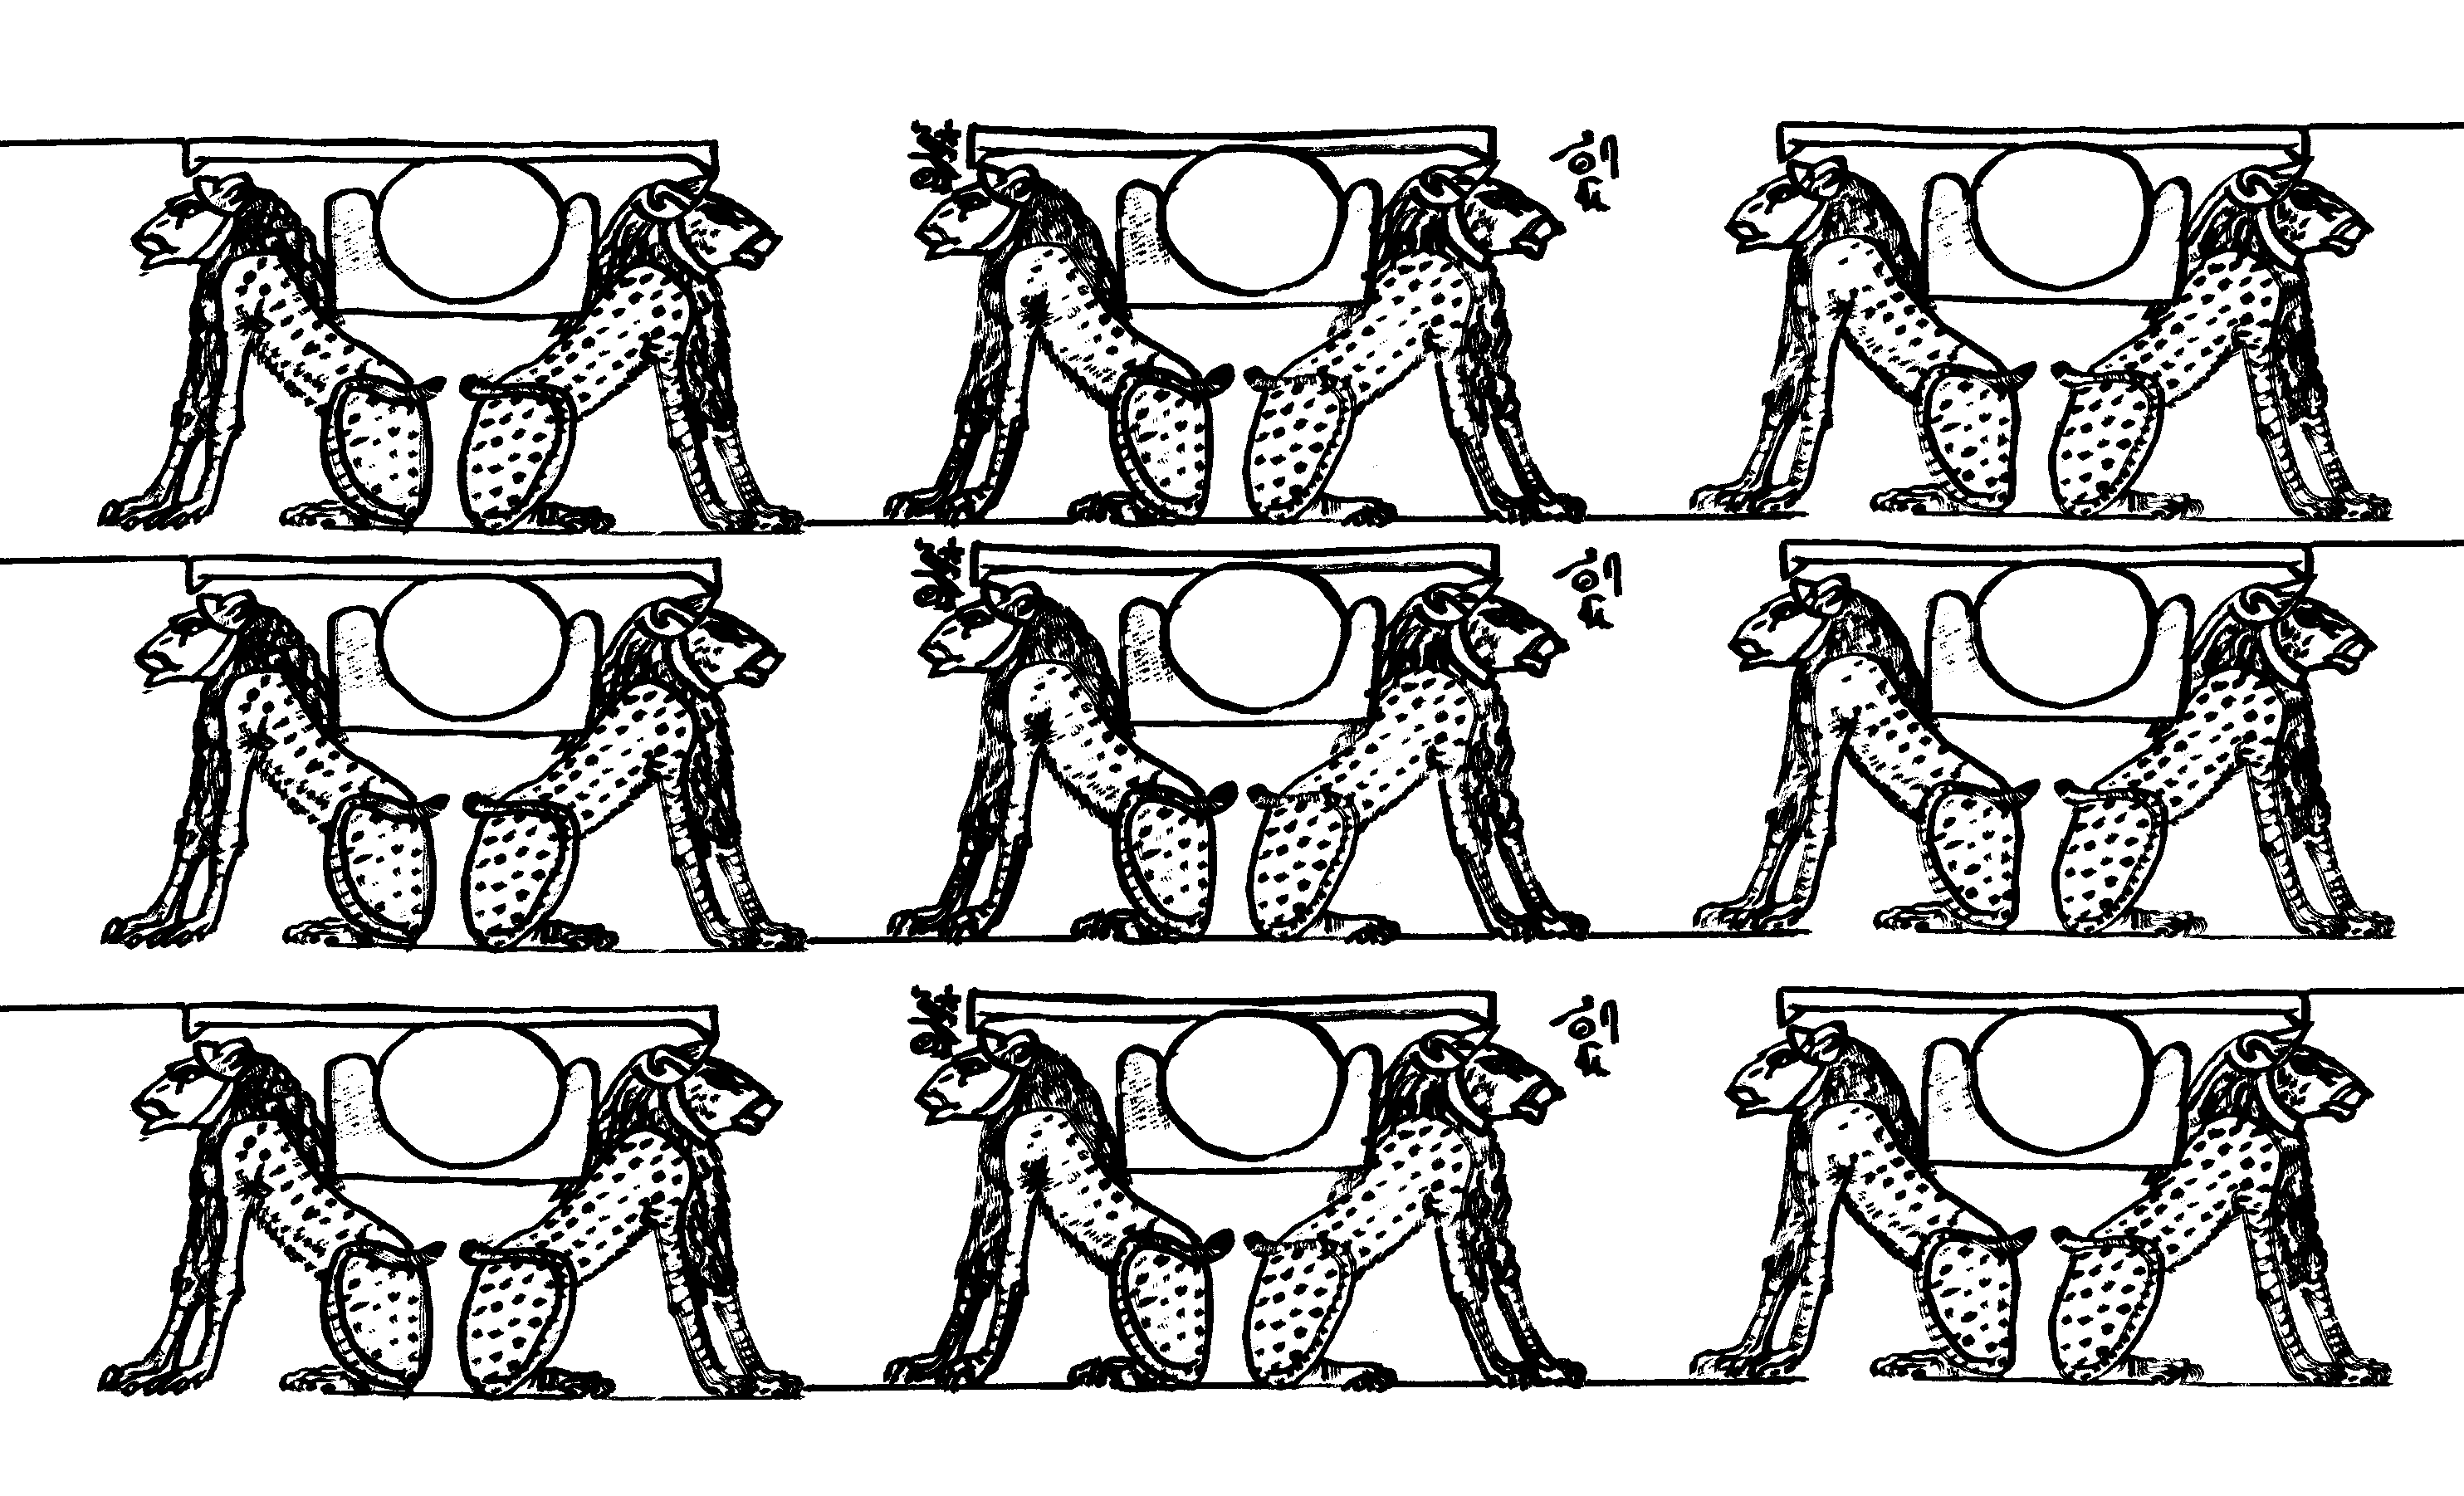 Agypten und hieroglyphen 4652